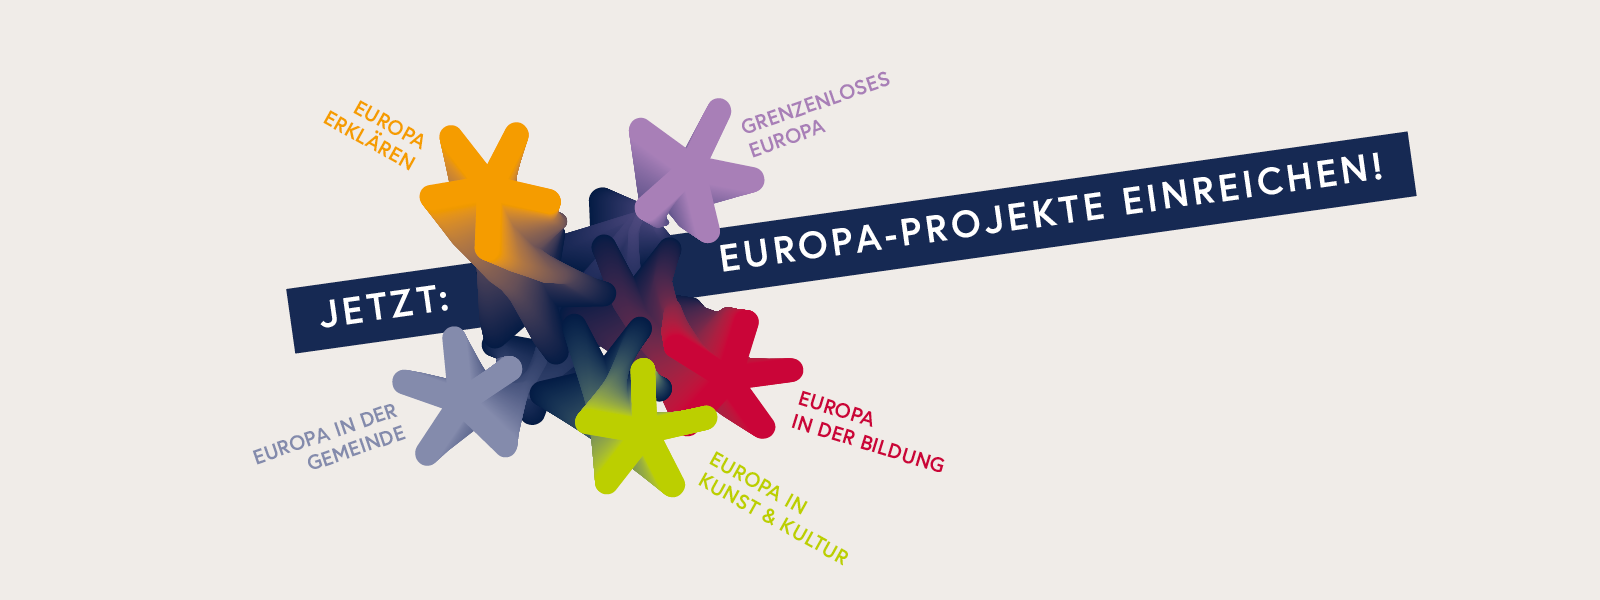 Sujet Jetzt Europa-Projekte einreichen